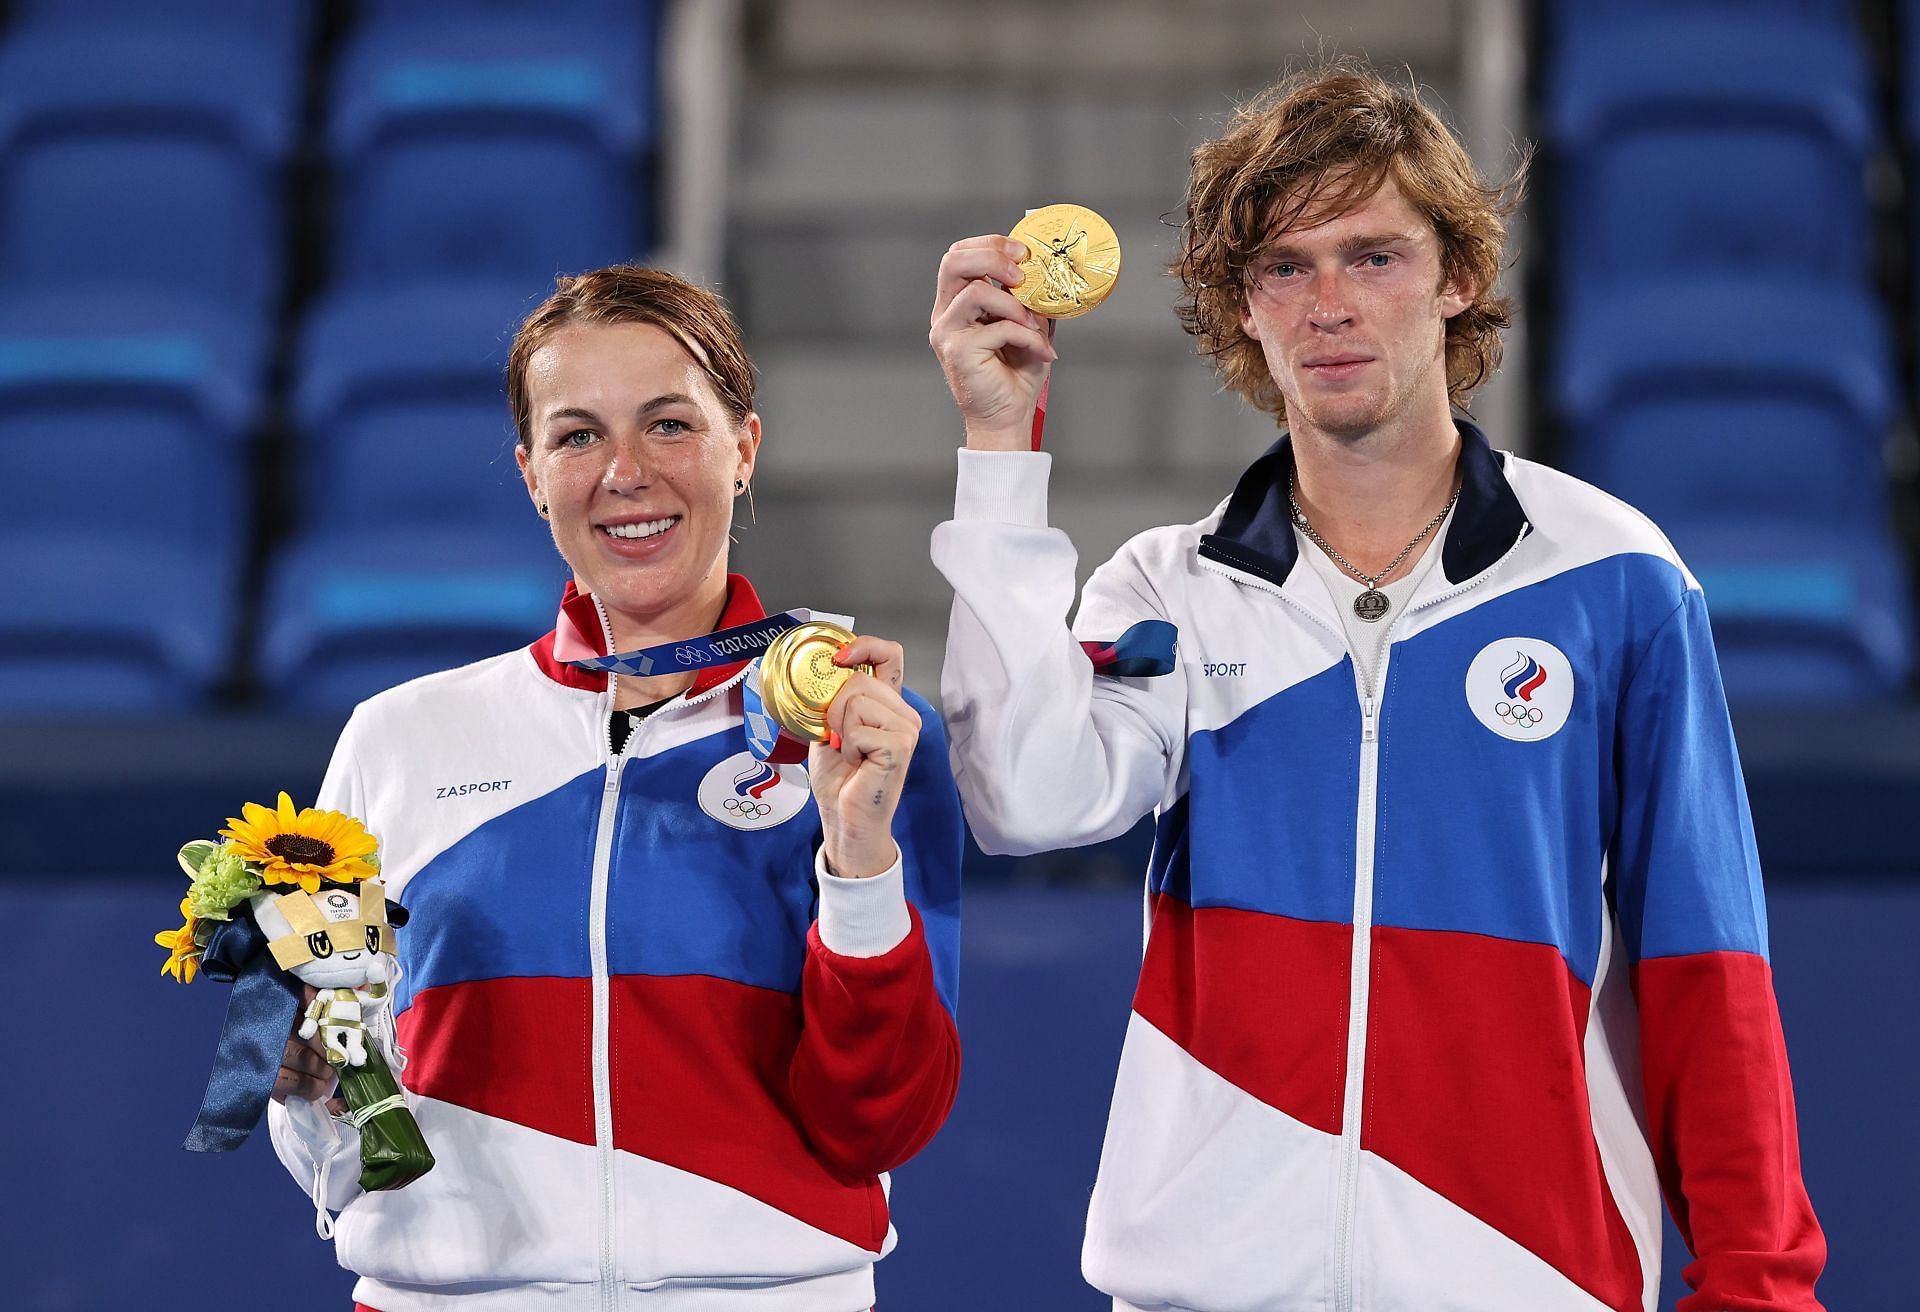 Anastasia Pavlyuchenkova and Andrey Rublev